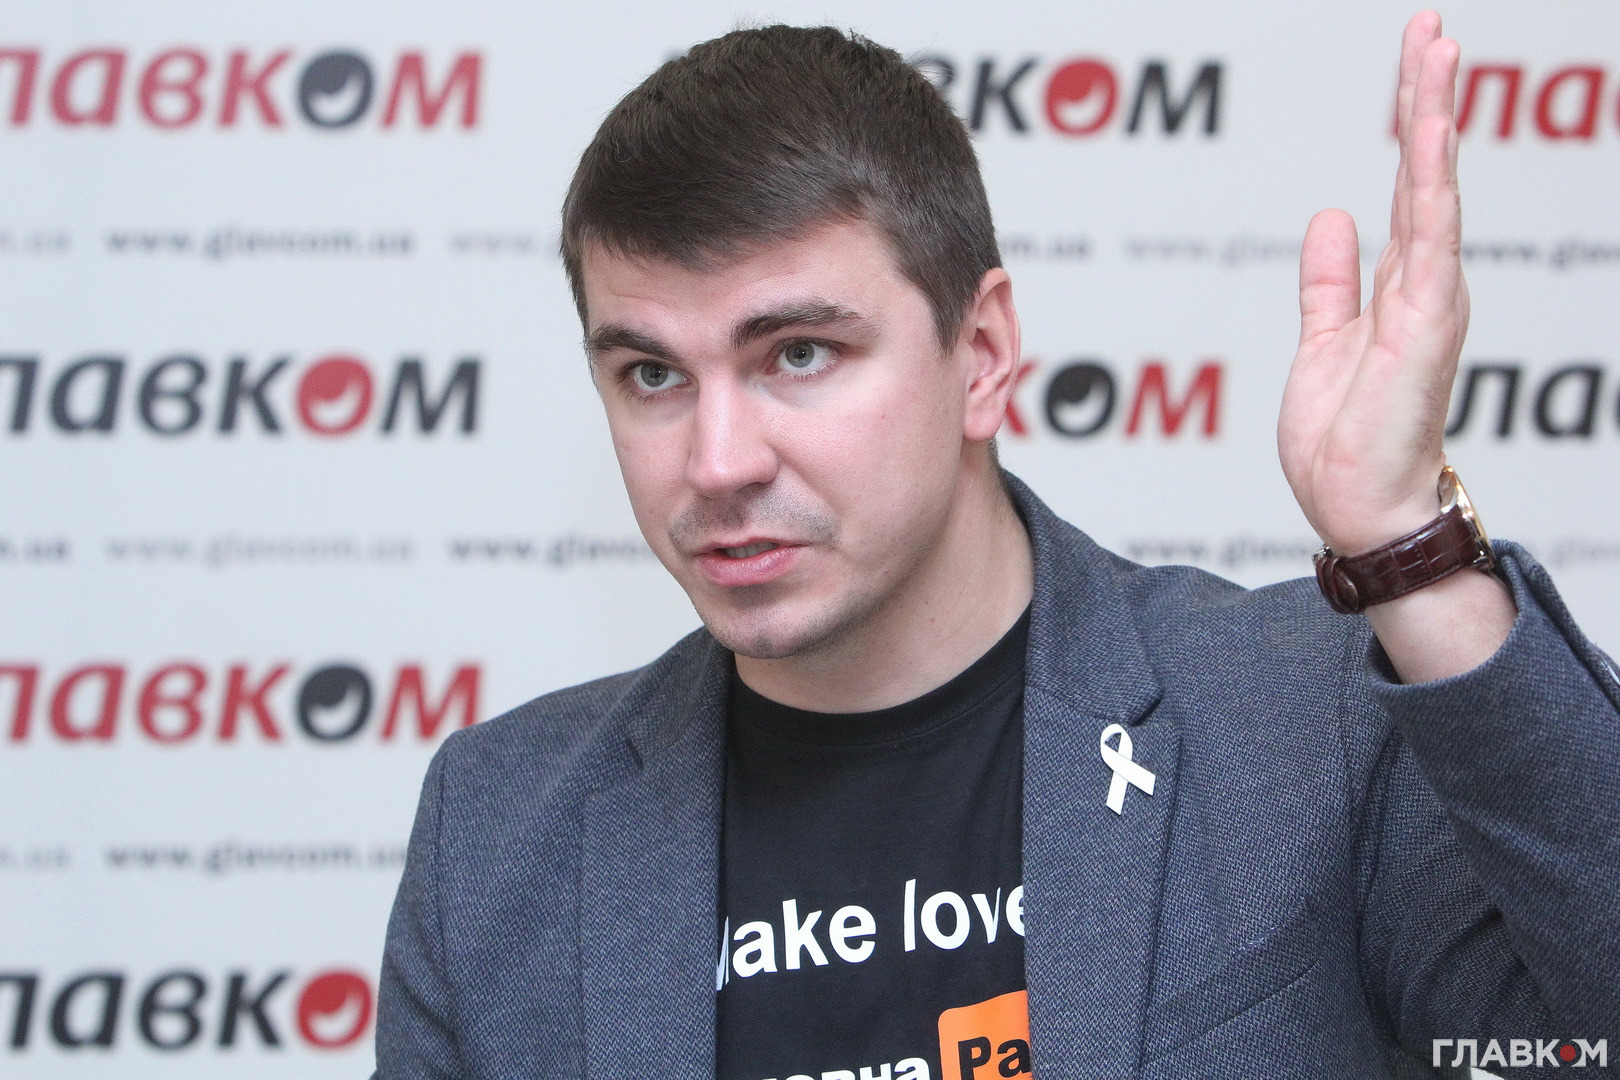 Поляков рассказал, сколько предлагают за продажу политических Telegram-каналов